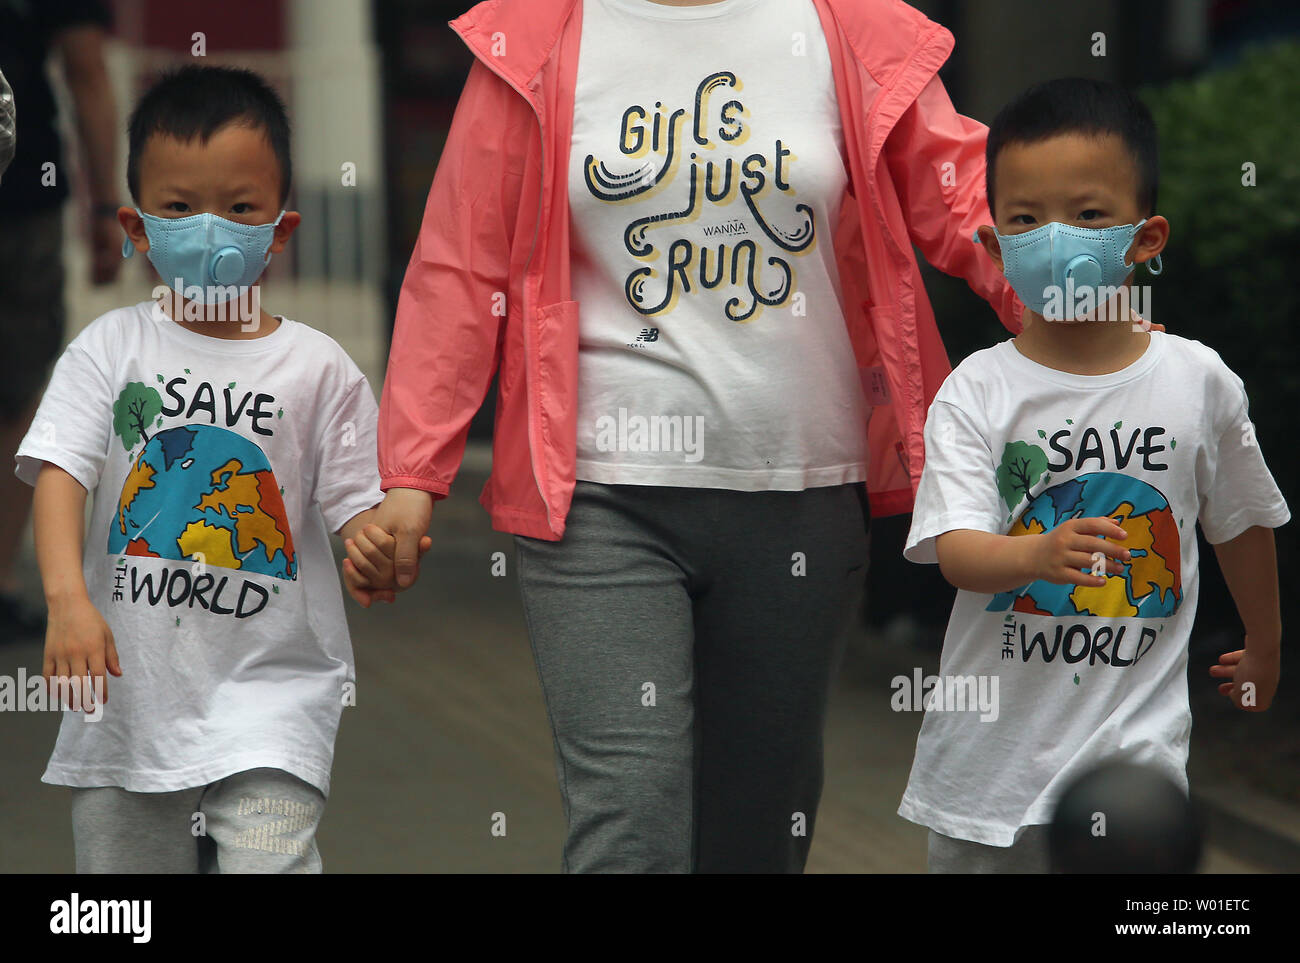 Eine Mutter und ihre Zwillinge tragen Gesichtsmasken gegen einen stark verschmutzten Tag in Peking am 12. Mai 2018 zu schützen. Chinas Luftverschmutzung führt 1,6 Millionen vorzeitige Todesfälle pro Jahr, nach Ansicht der Forscher am Institut für Arbeitsmedizin. Foto von Stephen Rasierer/UPI Stockfoto